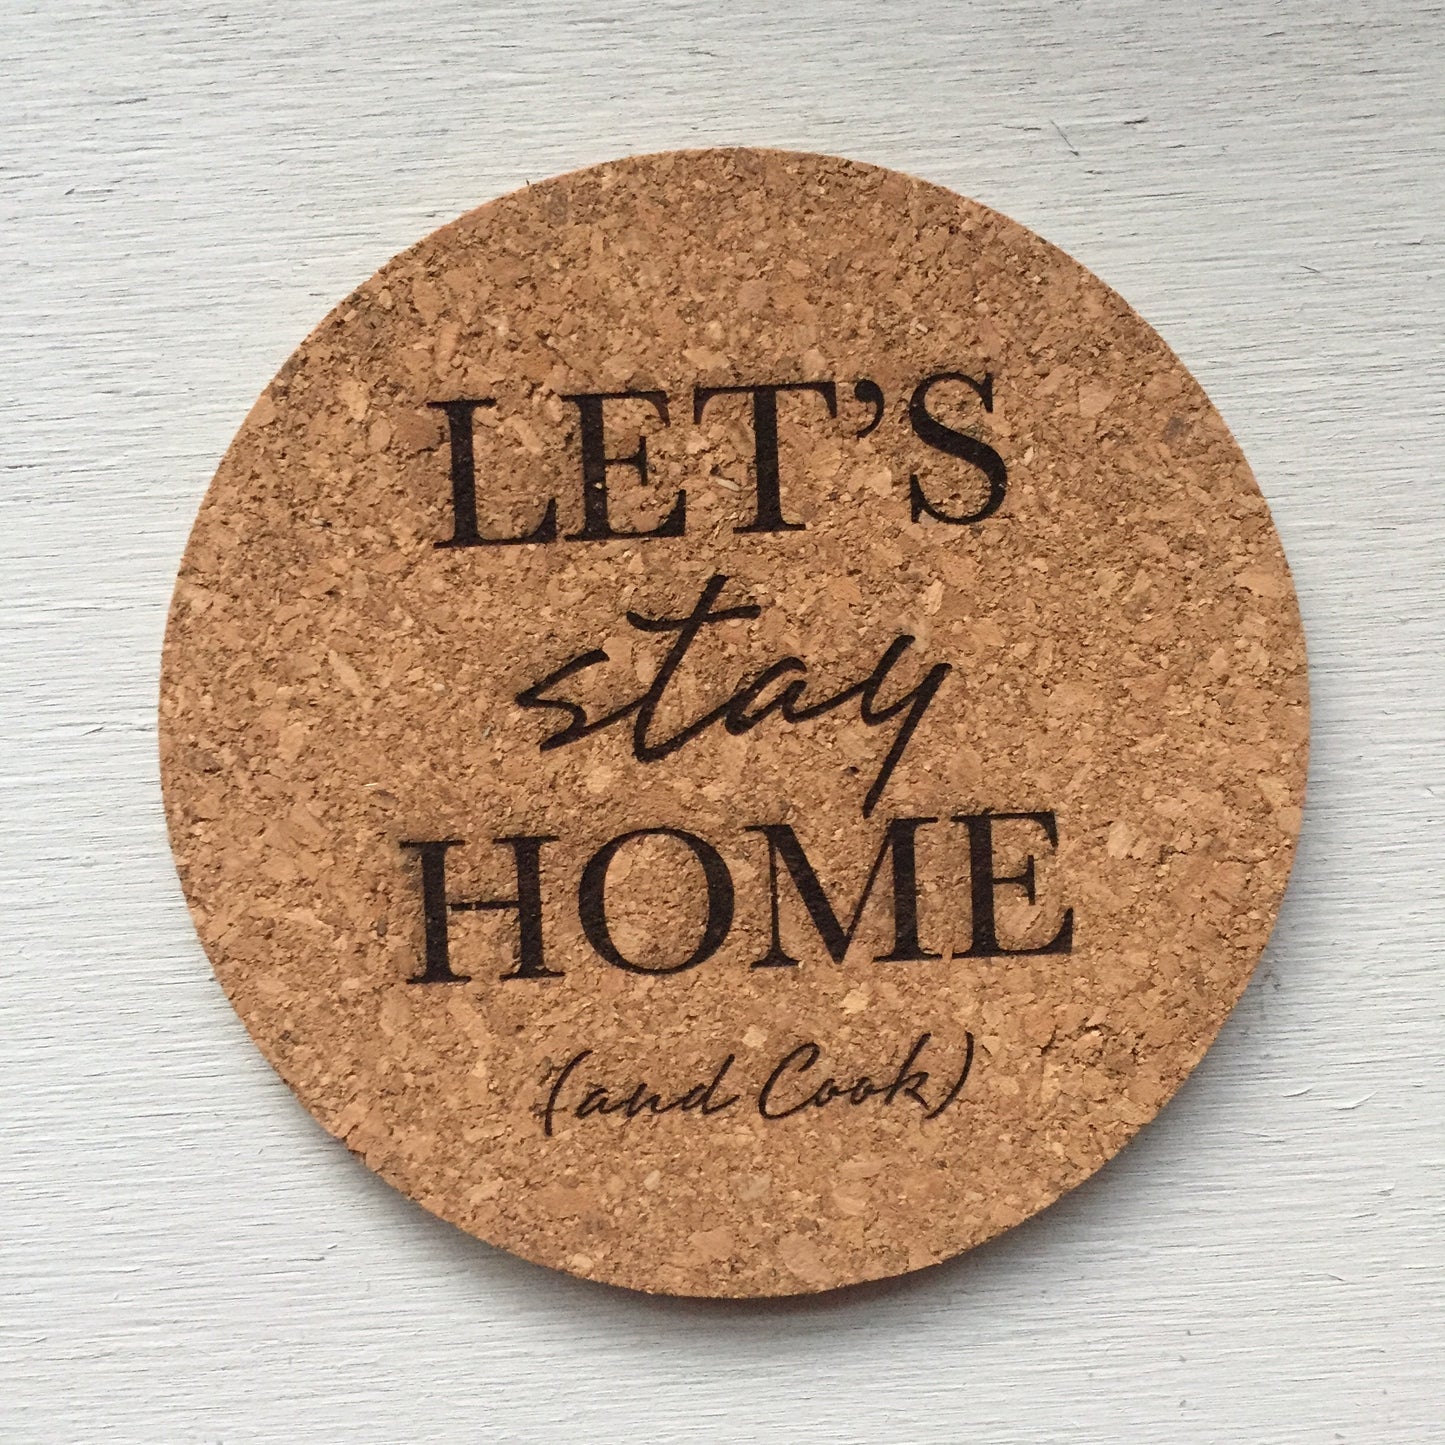 Let's Stay Home (and Cook) Cork Trivet || Laser Engraved Trivet